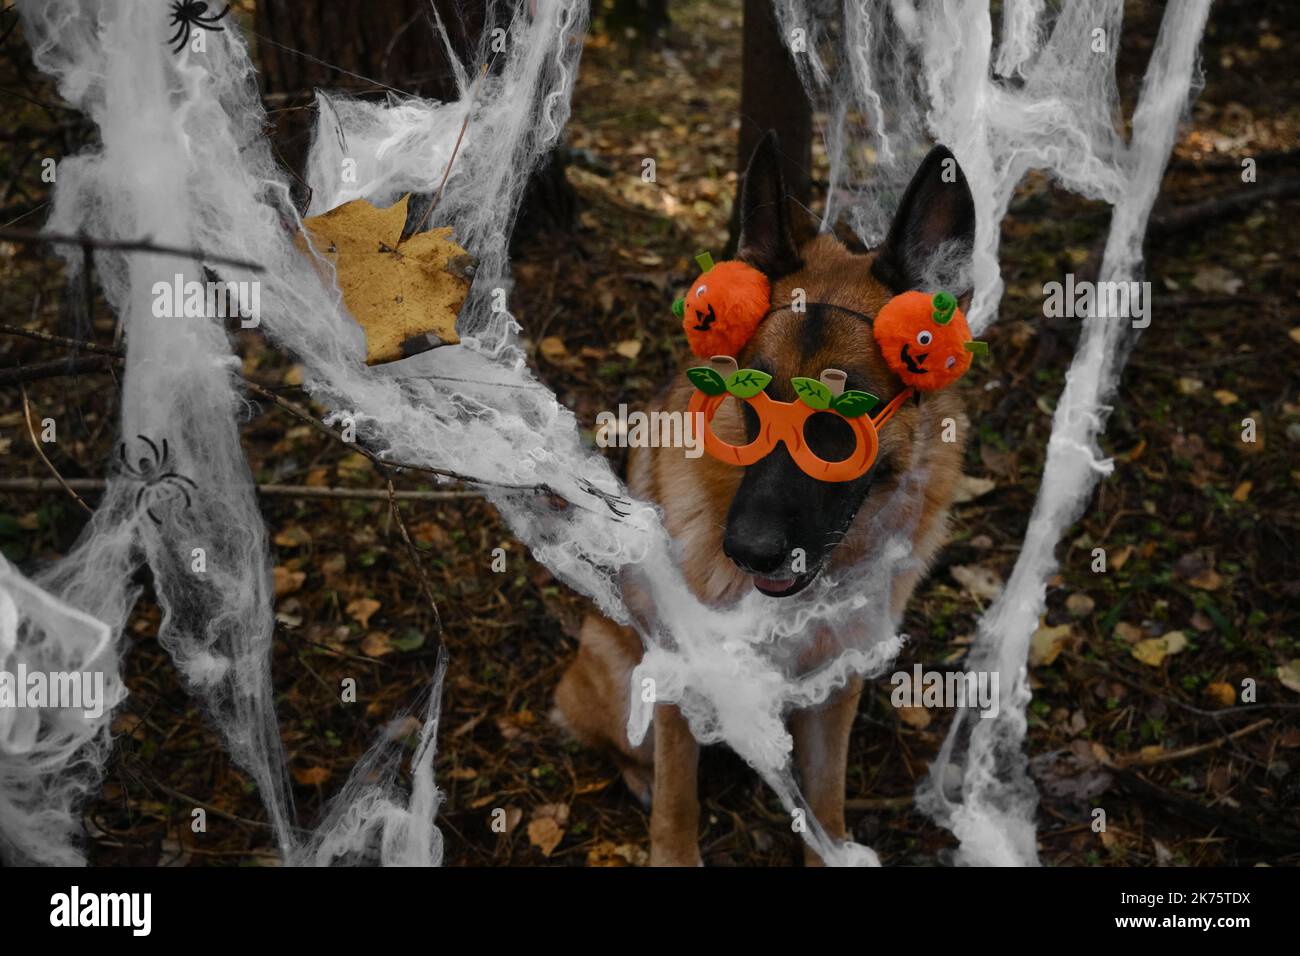 Pastor Alemán Smiling celebra Halloween en el bosque. El perro feliz lleva diadema y gafas con calabazas de naranja, tela de araña de decoración en otoño Foto de stock